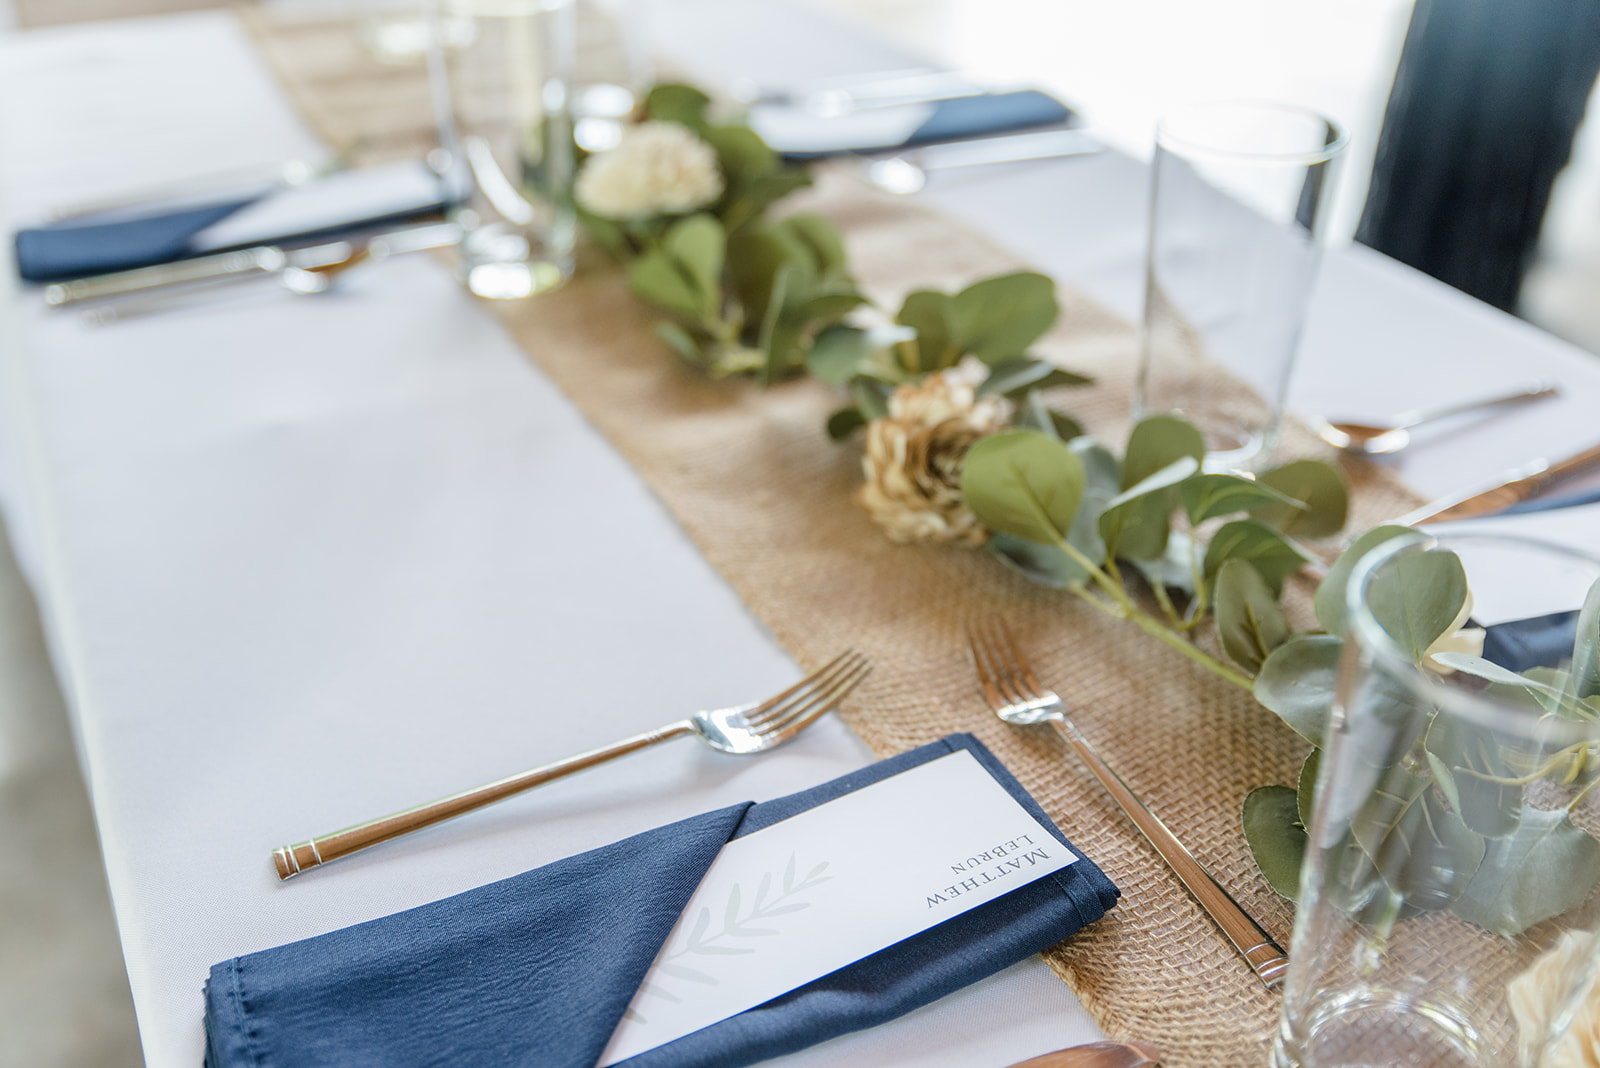 Wedding reception tablescape